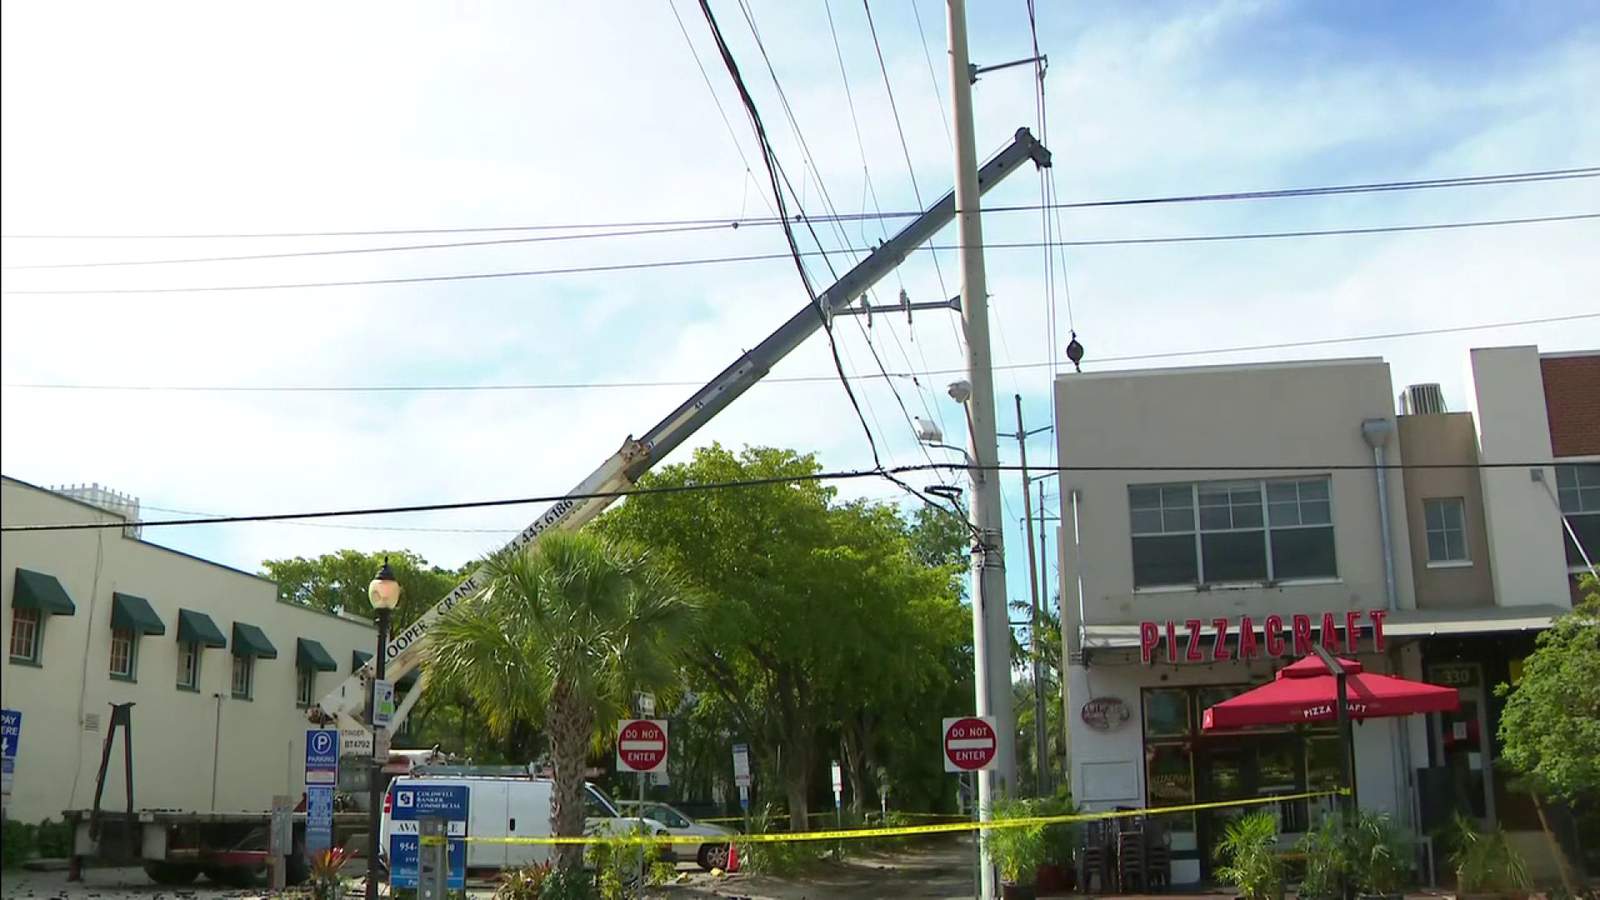 Grúa golpea línea eléctrica en Fort Lauderdale, causando explosión e hiriendo a operador